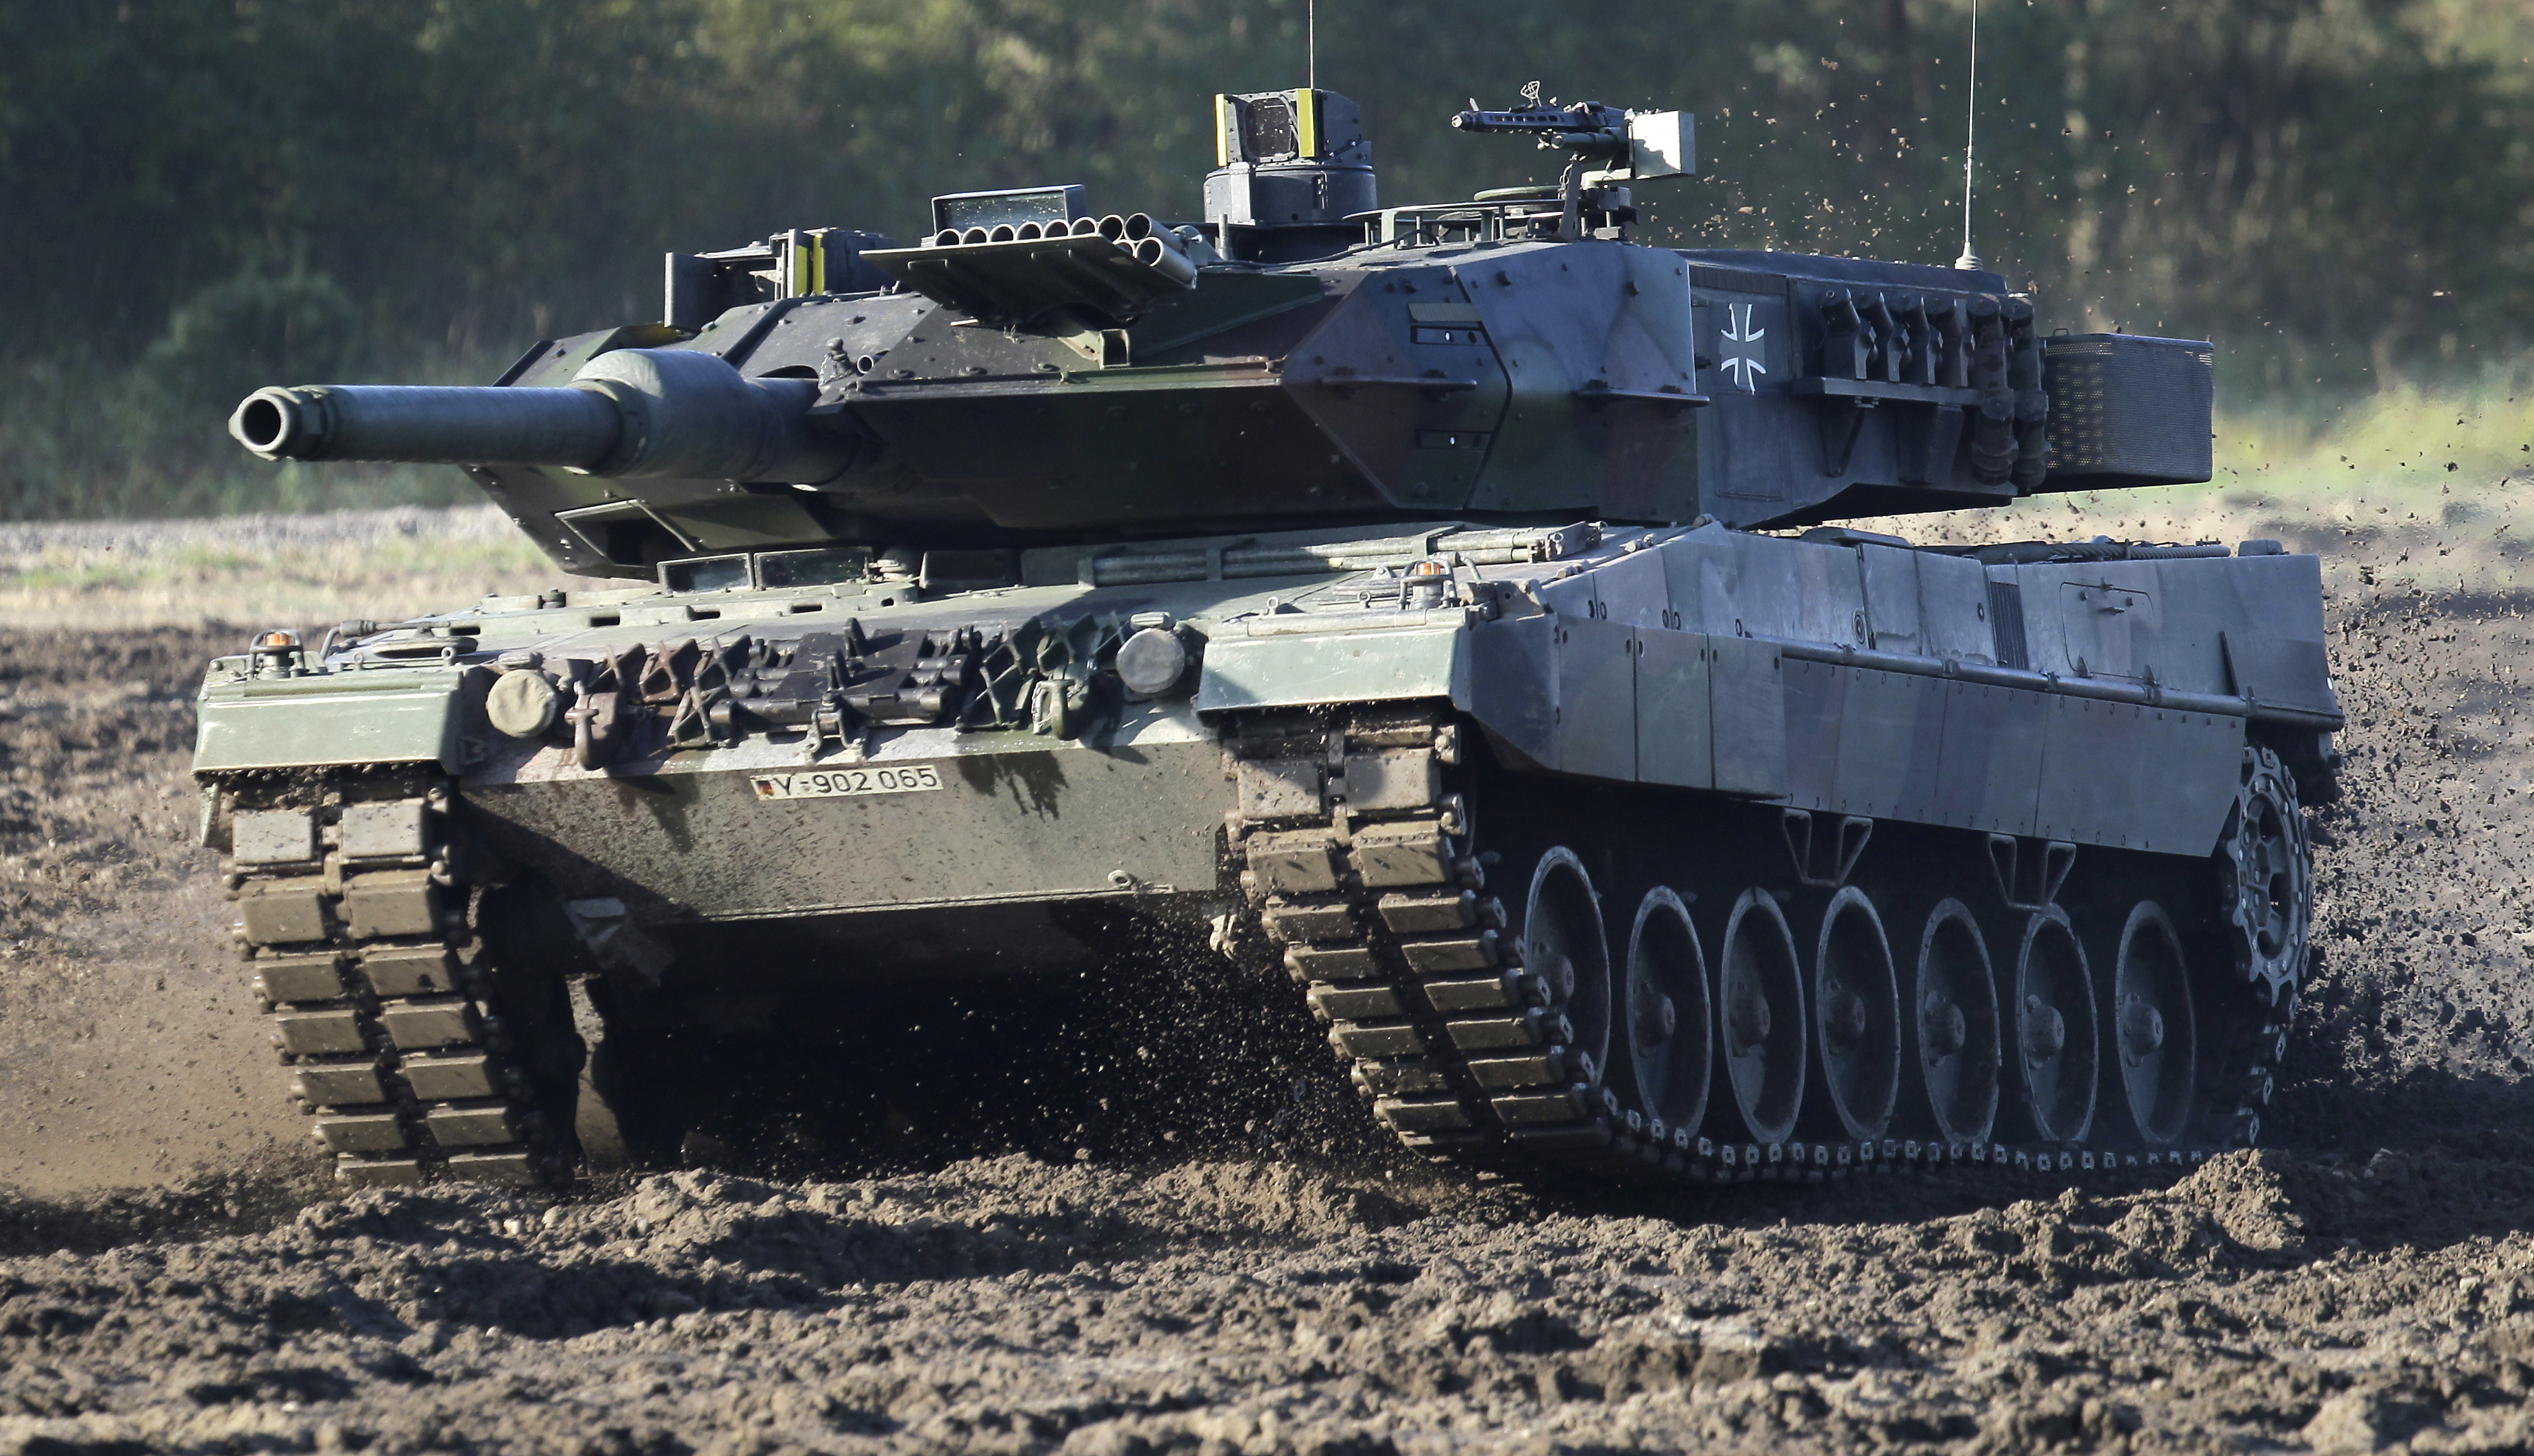 ARCHIVO - Un tanque Leopard 2 se ve durante una demostración para medios alemanes organizado por las fuerzas armadas alemanas en Munster, cerca de Hannover, Alemania, el miércoles 28 de septiembre de 2011. (AP Foto/Michael Sohn, Archivo)